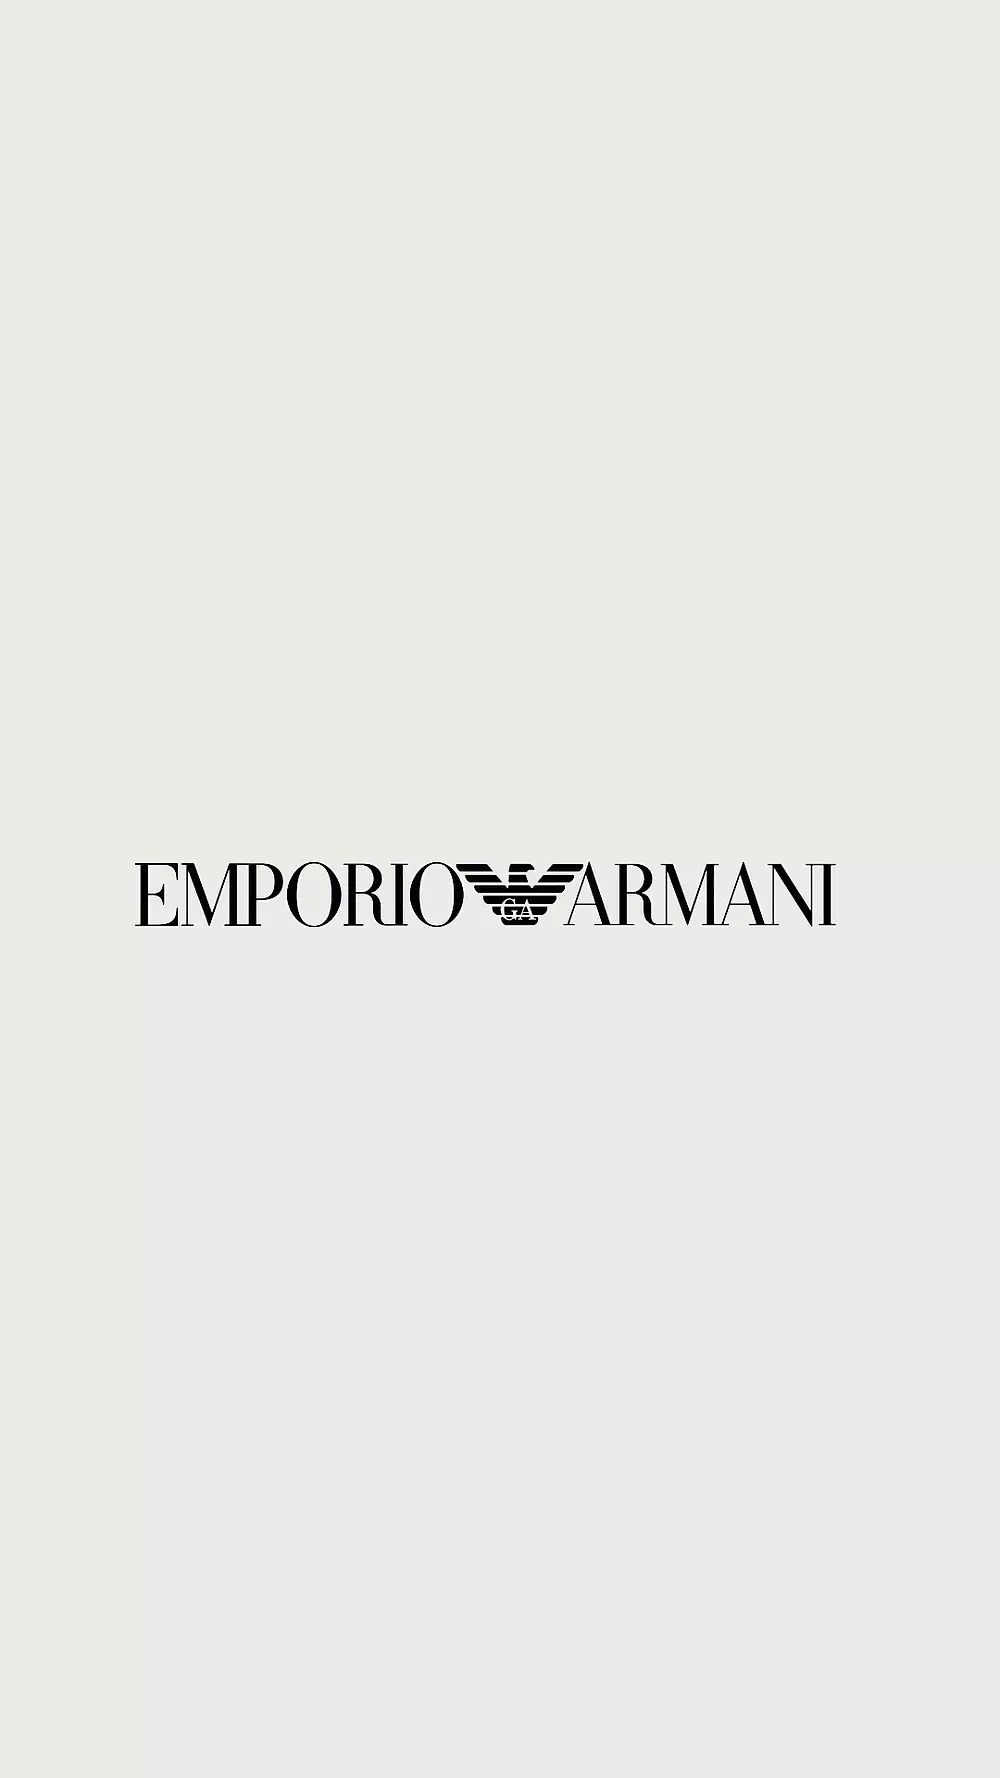 - unique a accessories Armani for Emporio style Customized